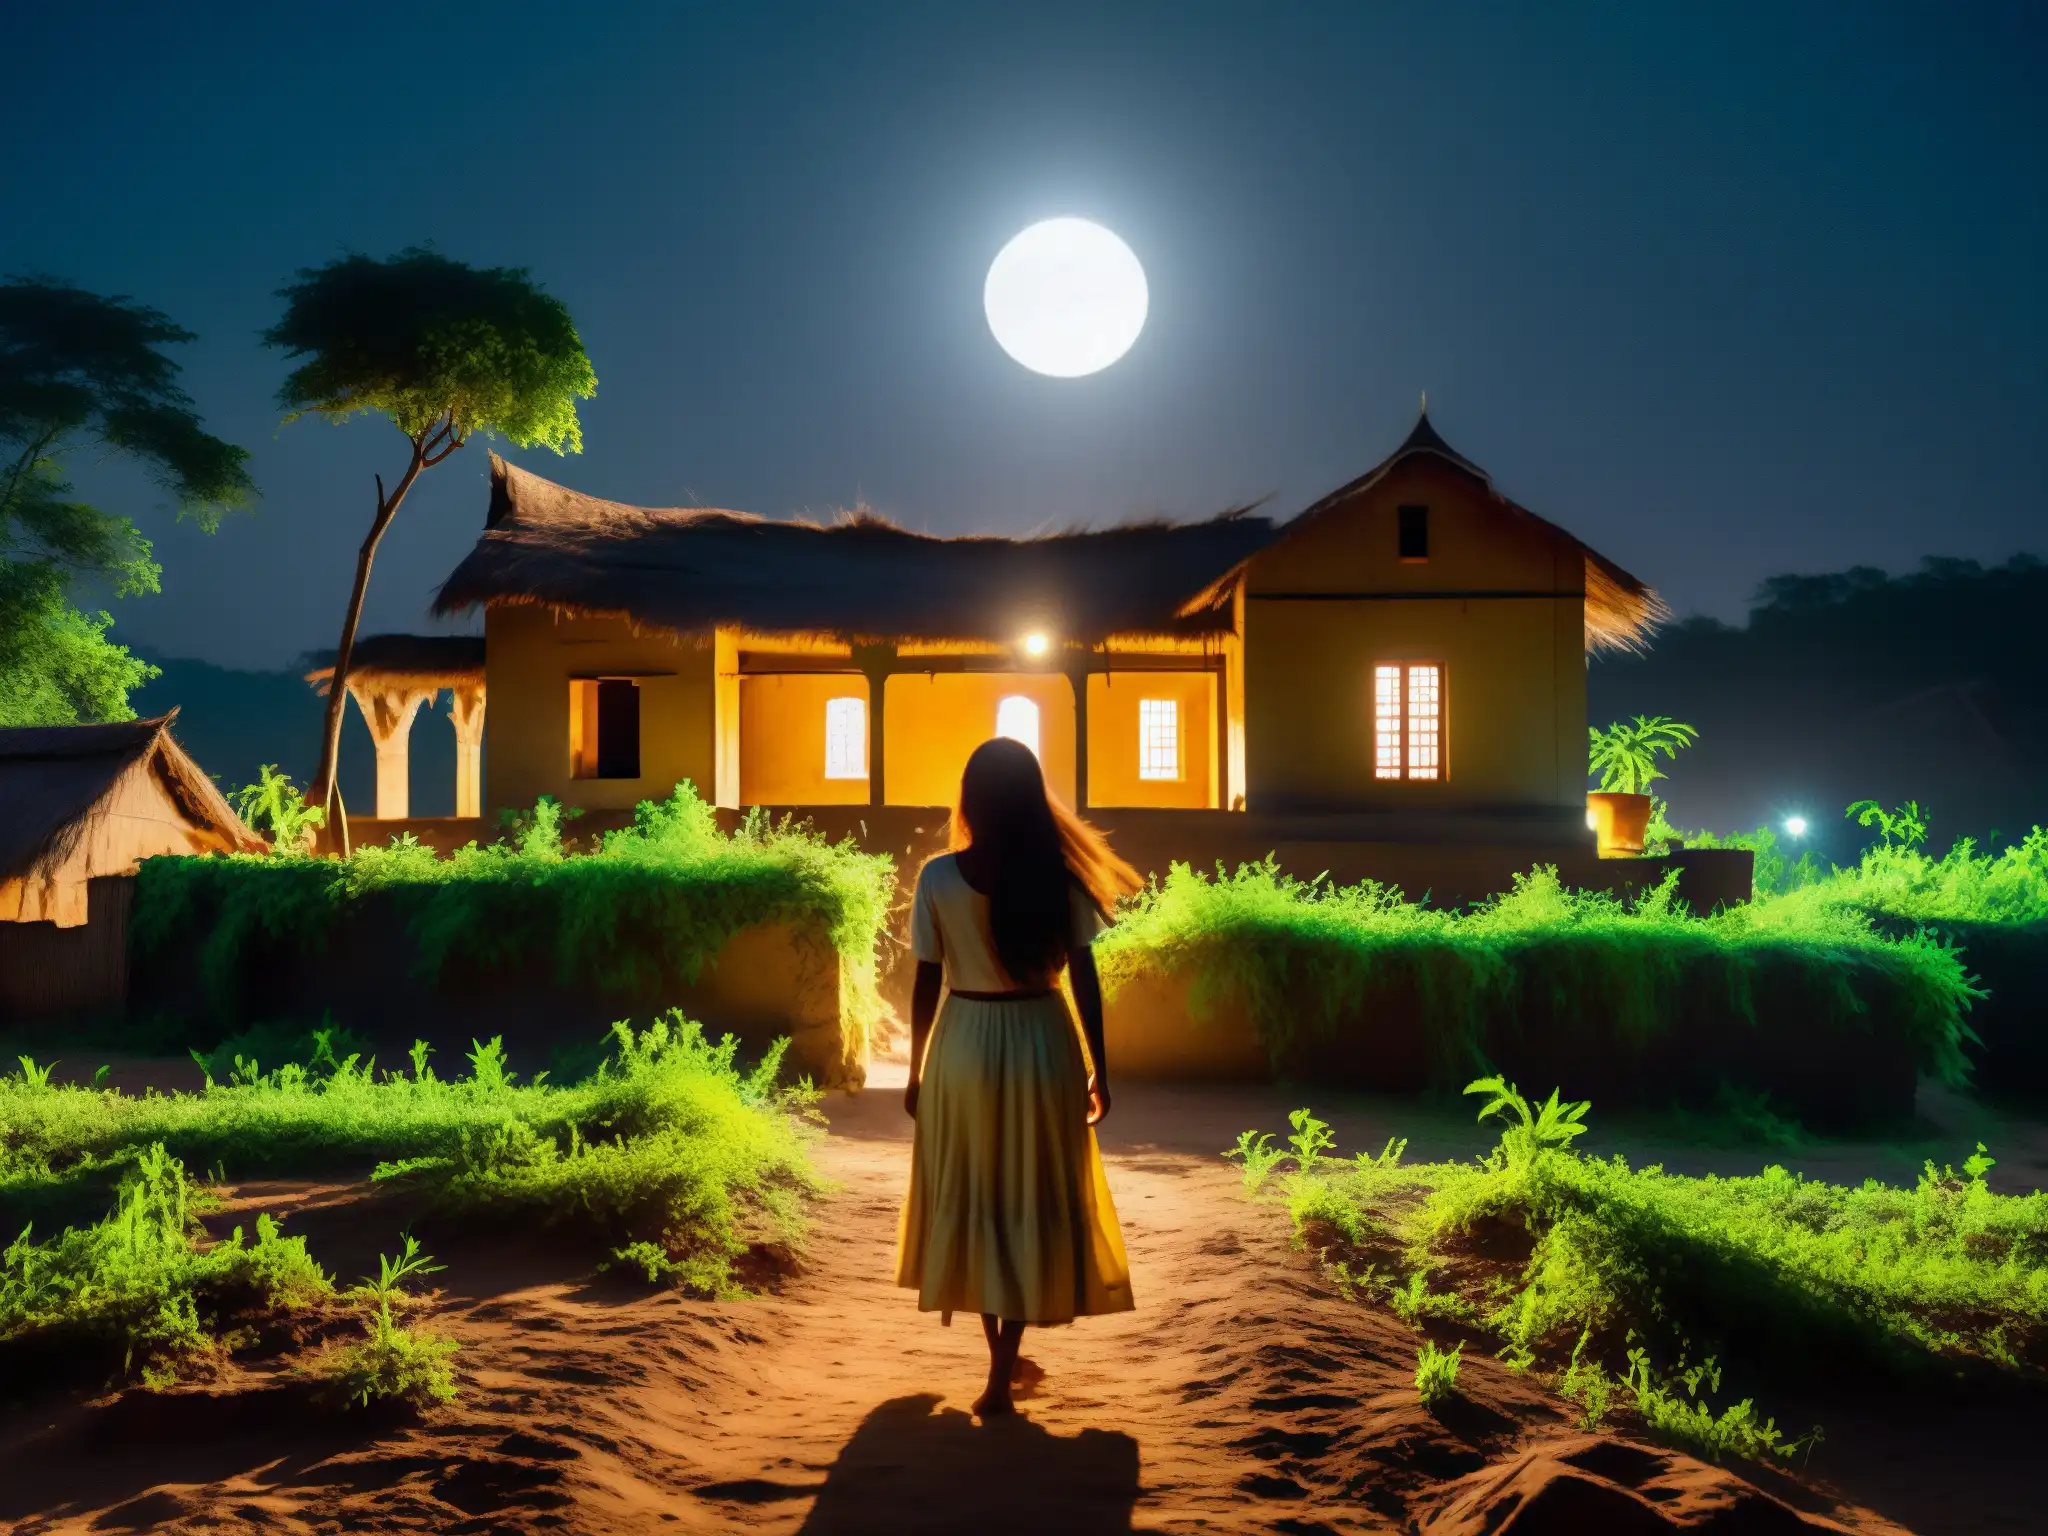 Una aldea india iluminada por la luna, con vegetación densa y viejas edificaciones que proyectan largas sombras